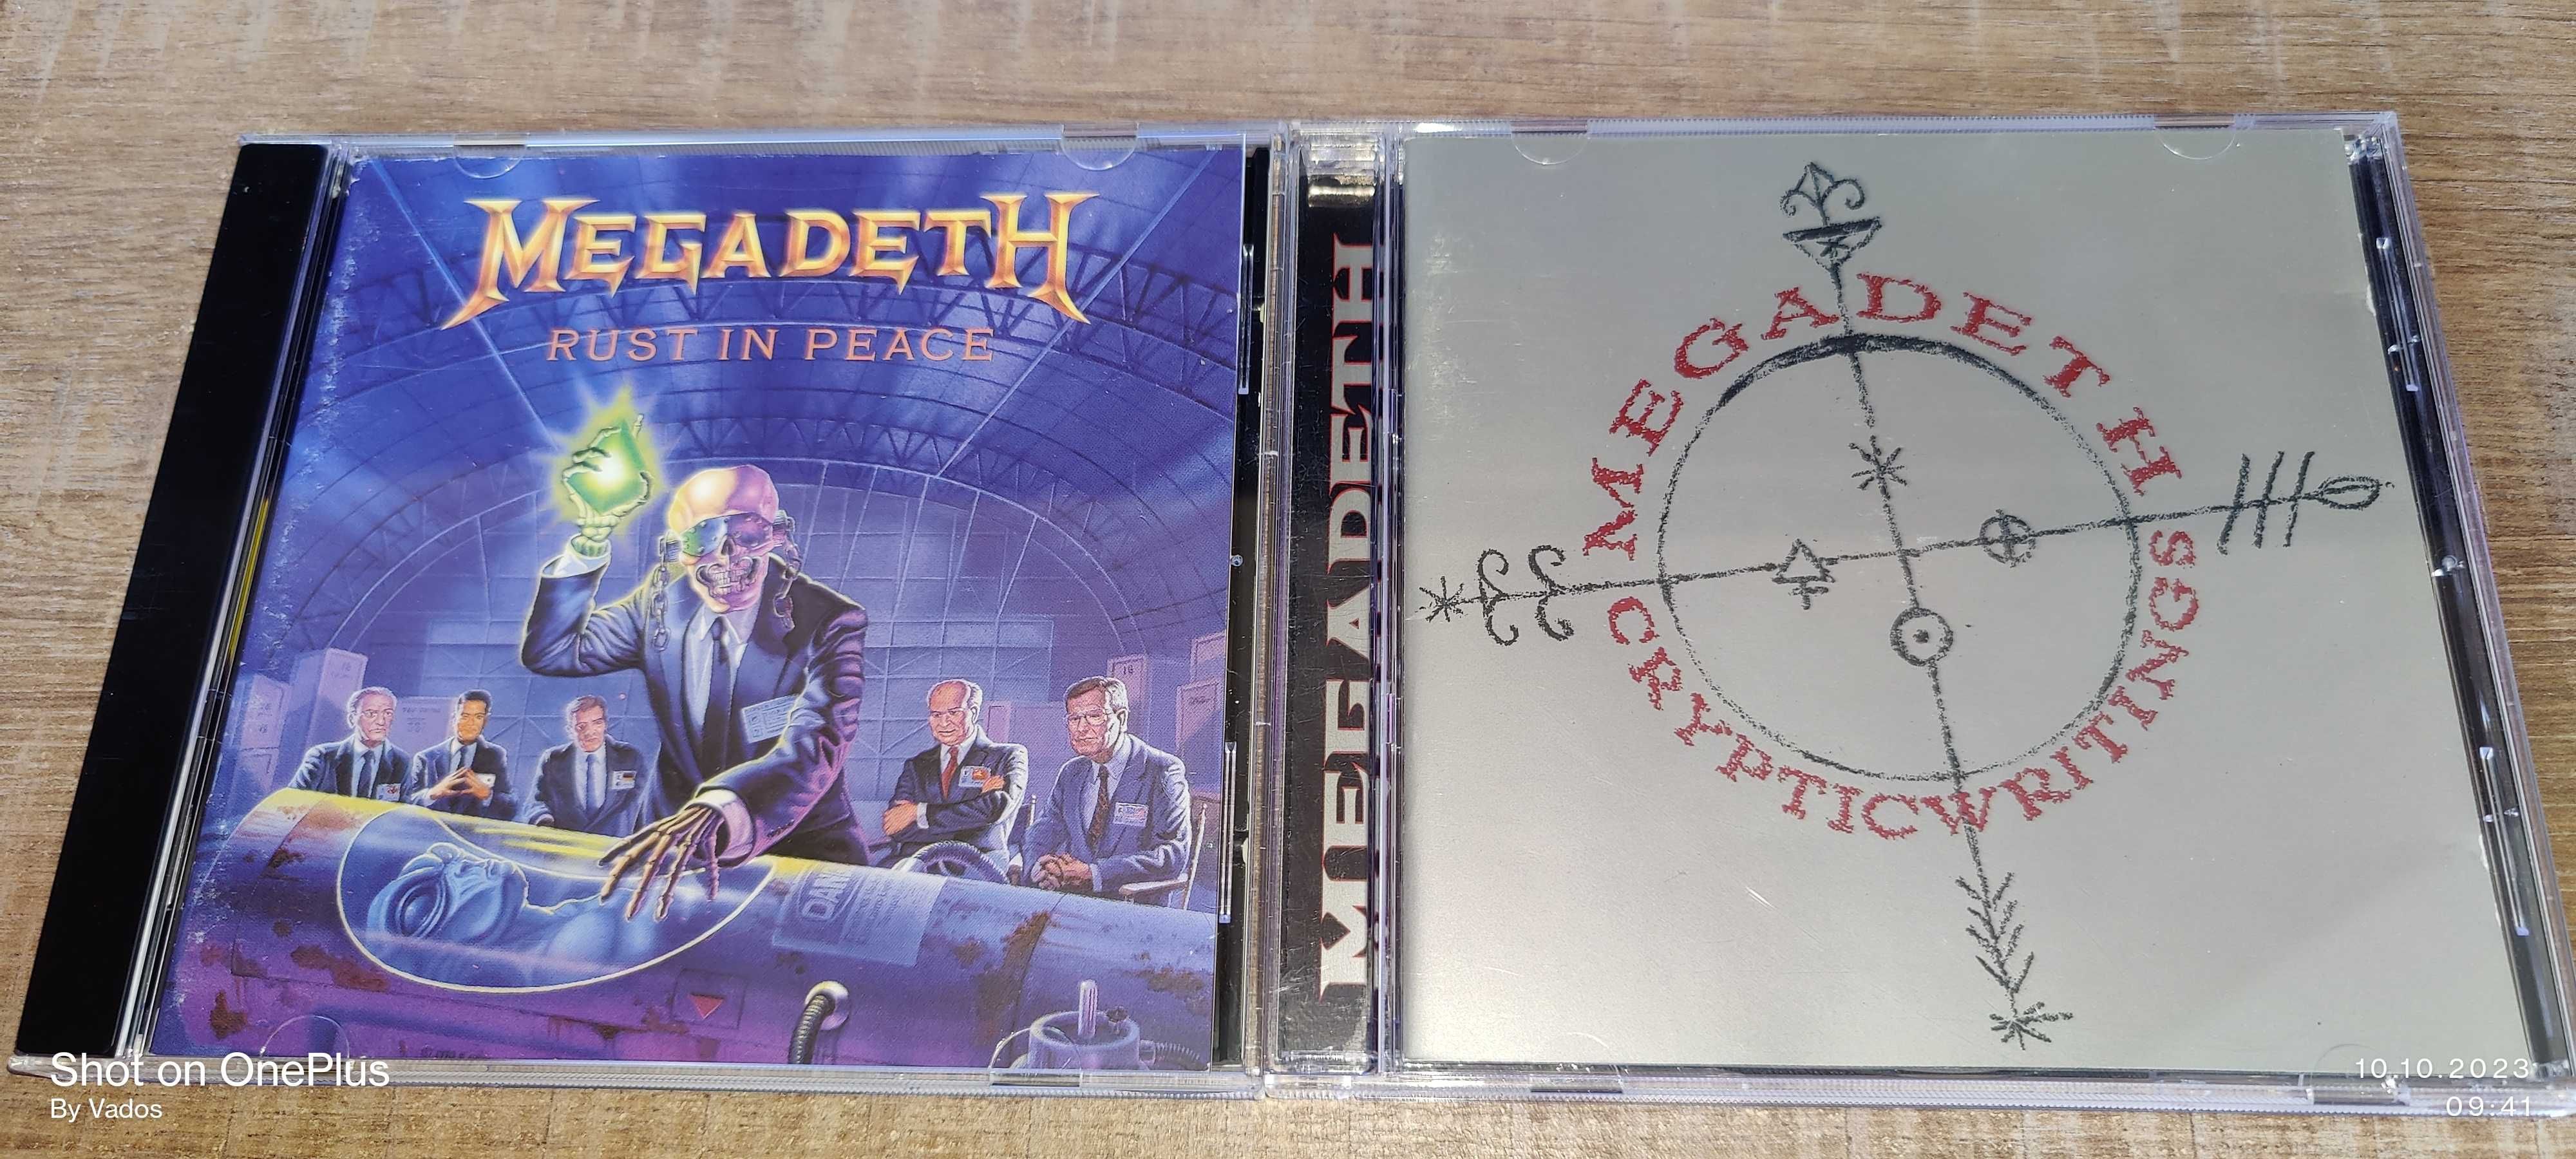 Фирменные CD Megadeth,Metallica,MD.45